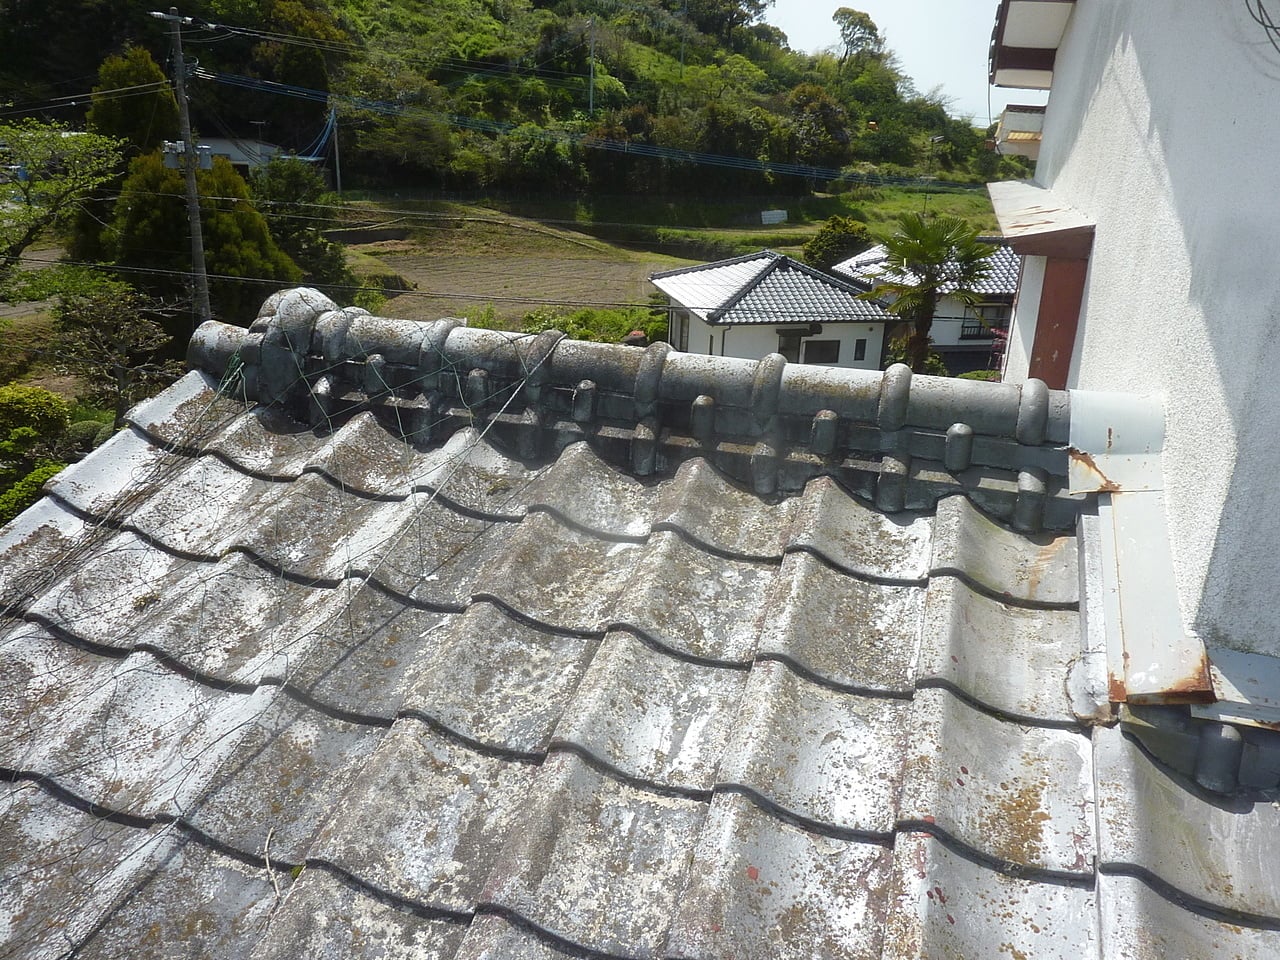 屋根外壁塗装